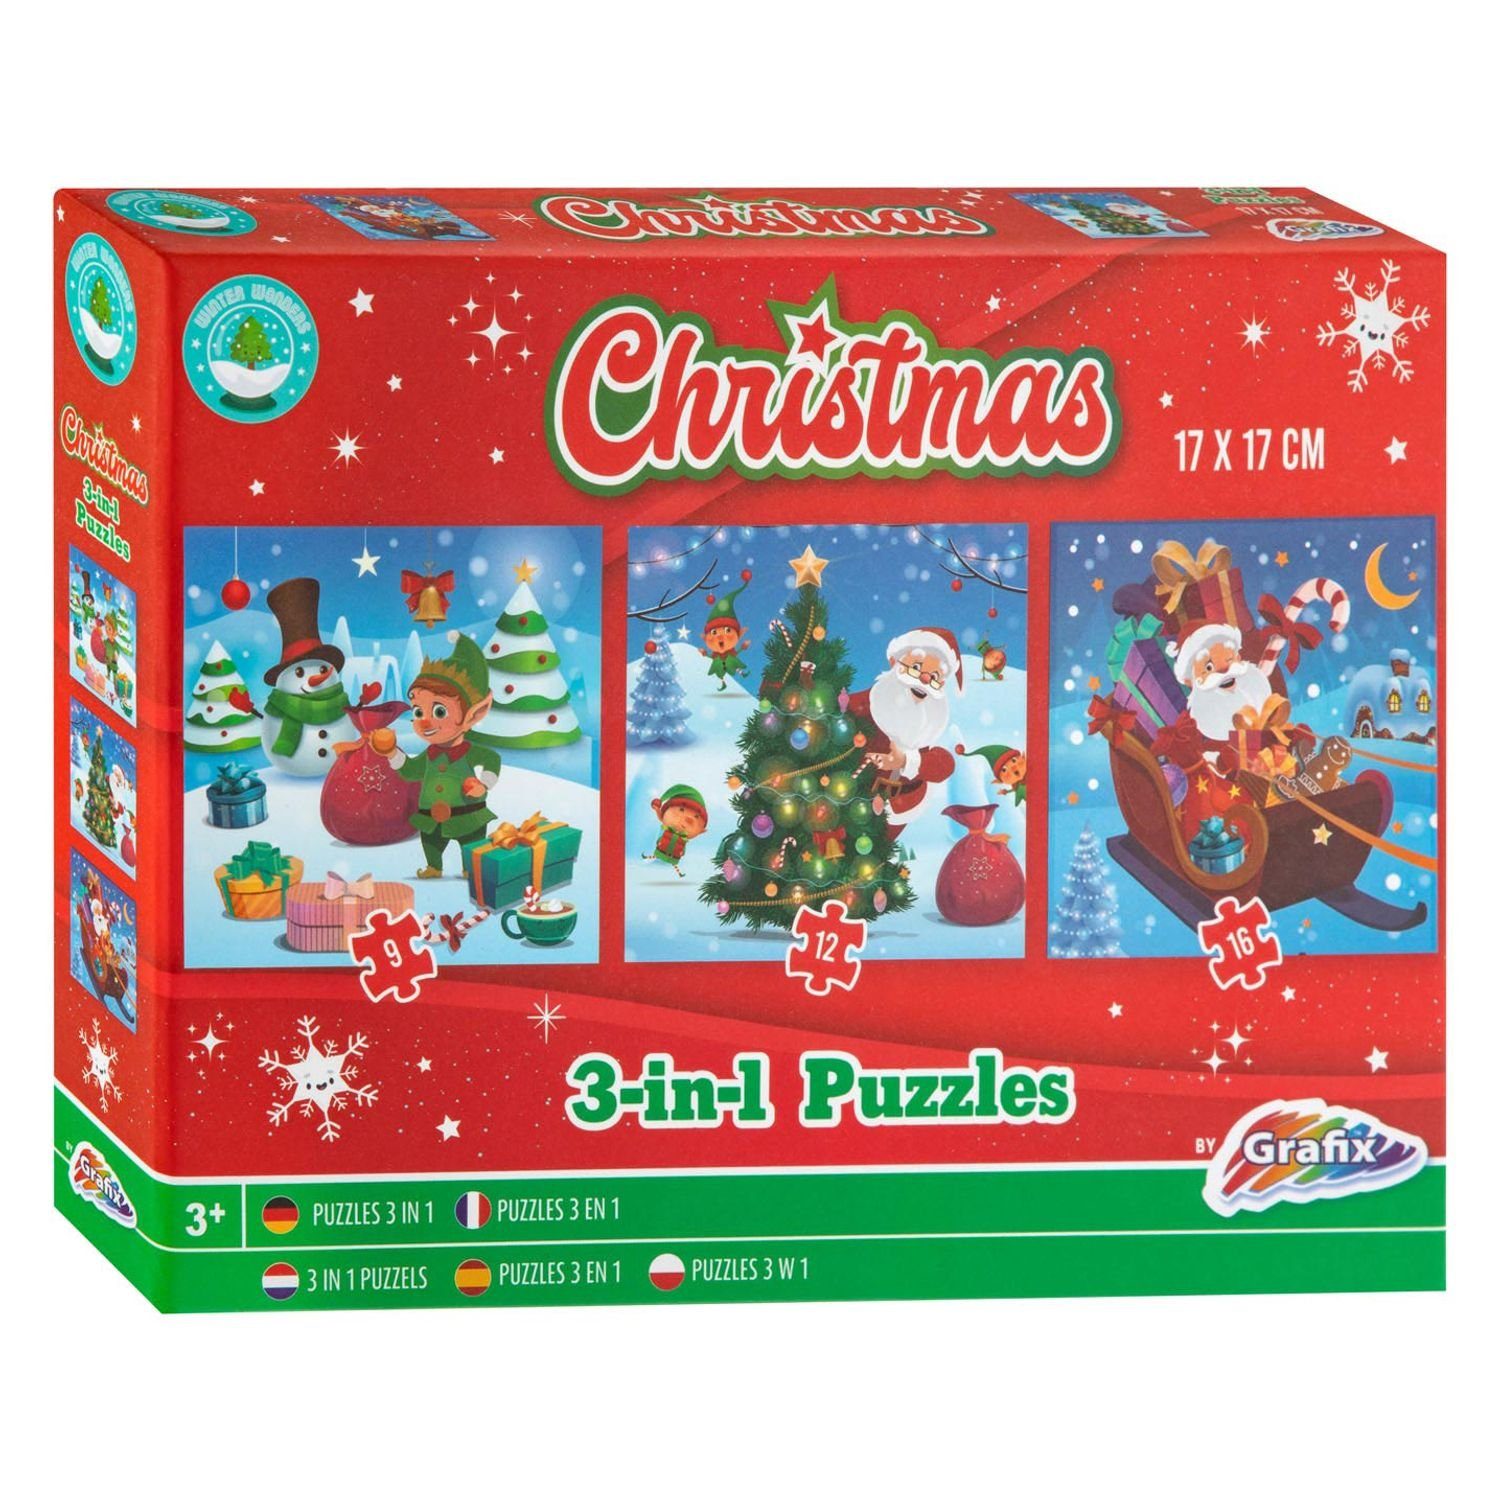 BURI Steckpuzzle 12x Weihnachtspuzzle 3in1 Weihnachten Puzzle 17x17cm,  Puzzleteile